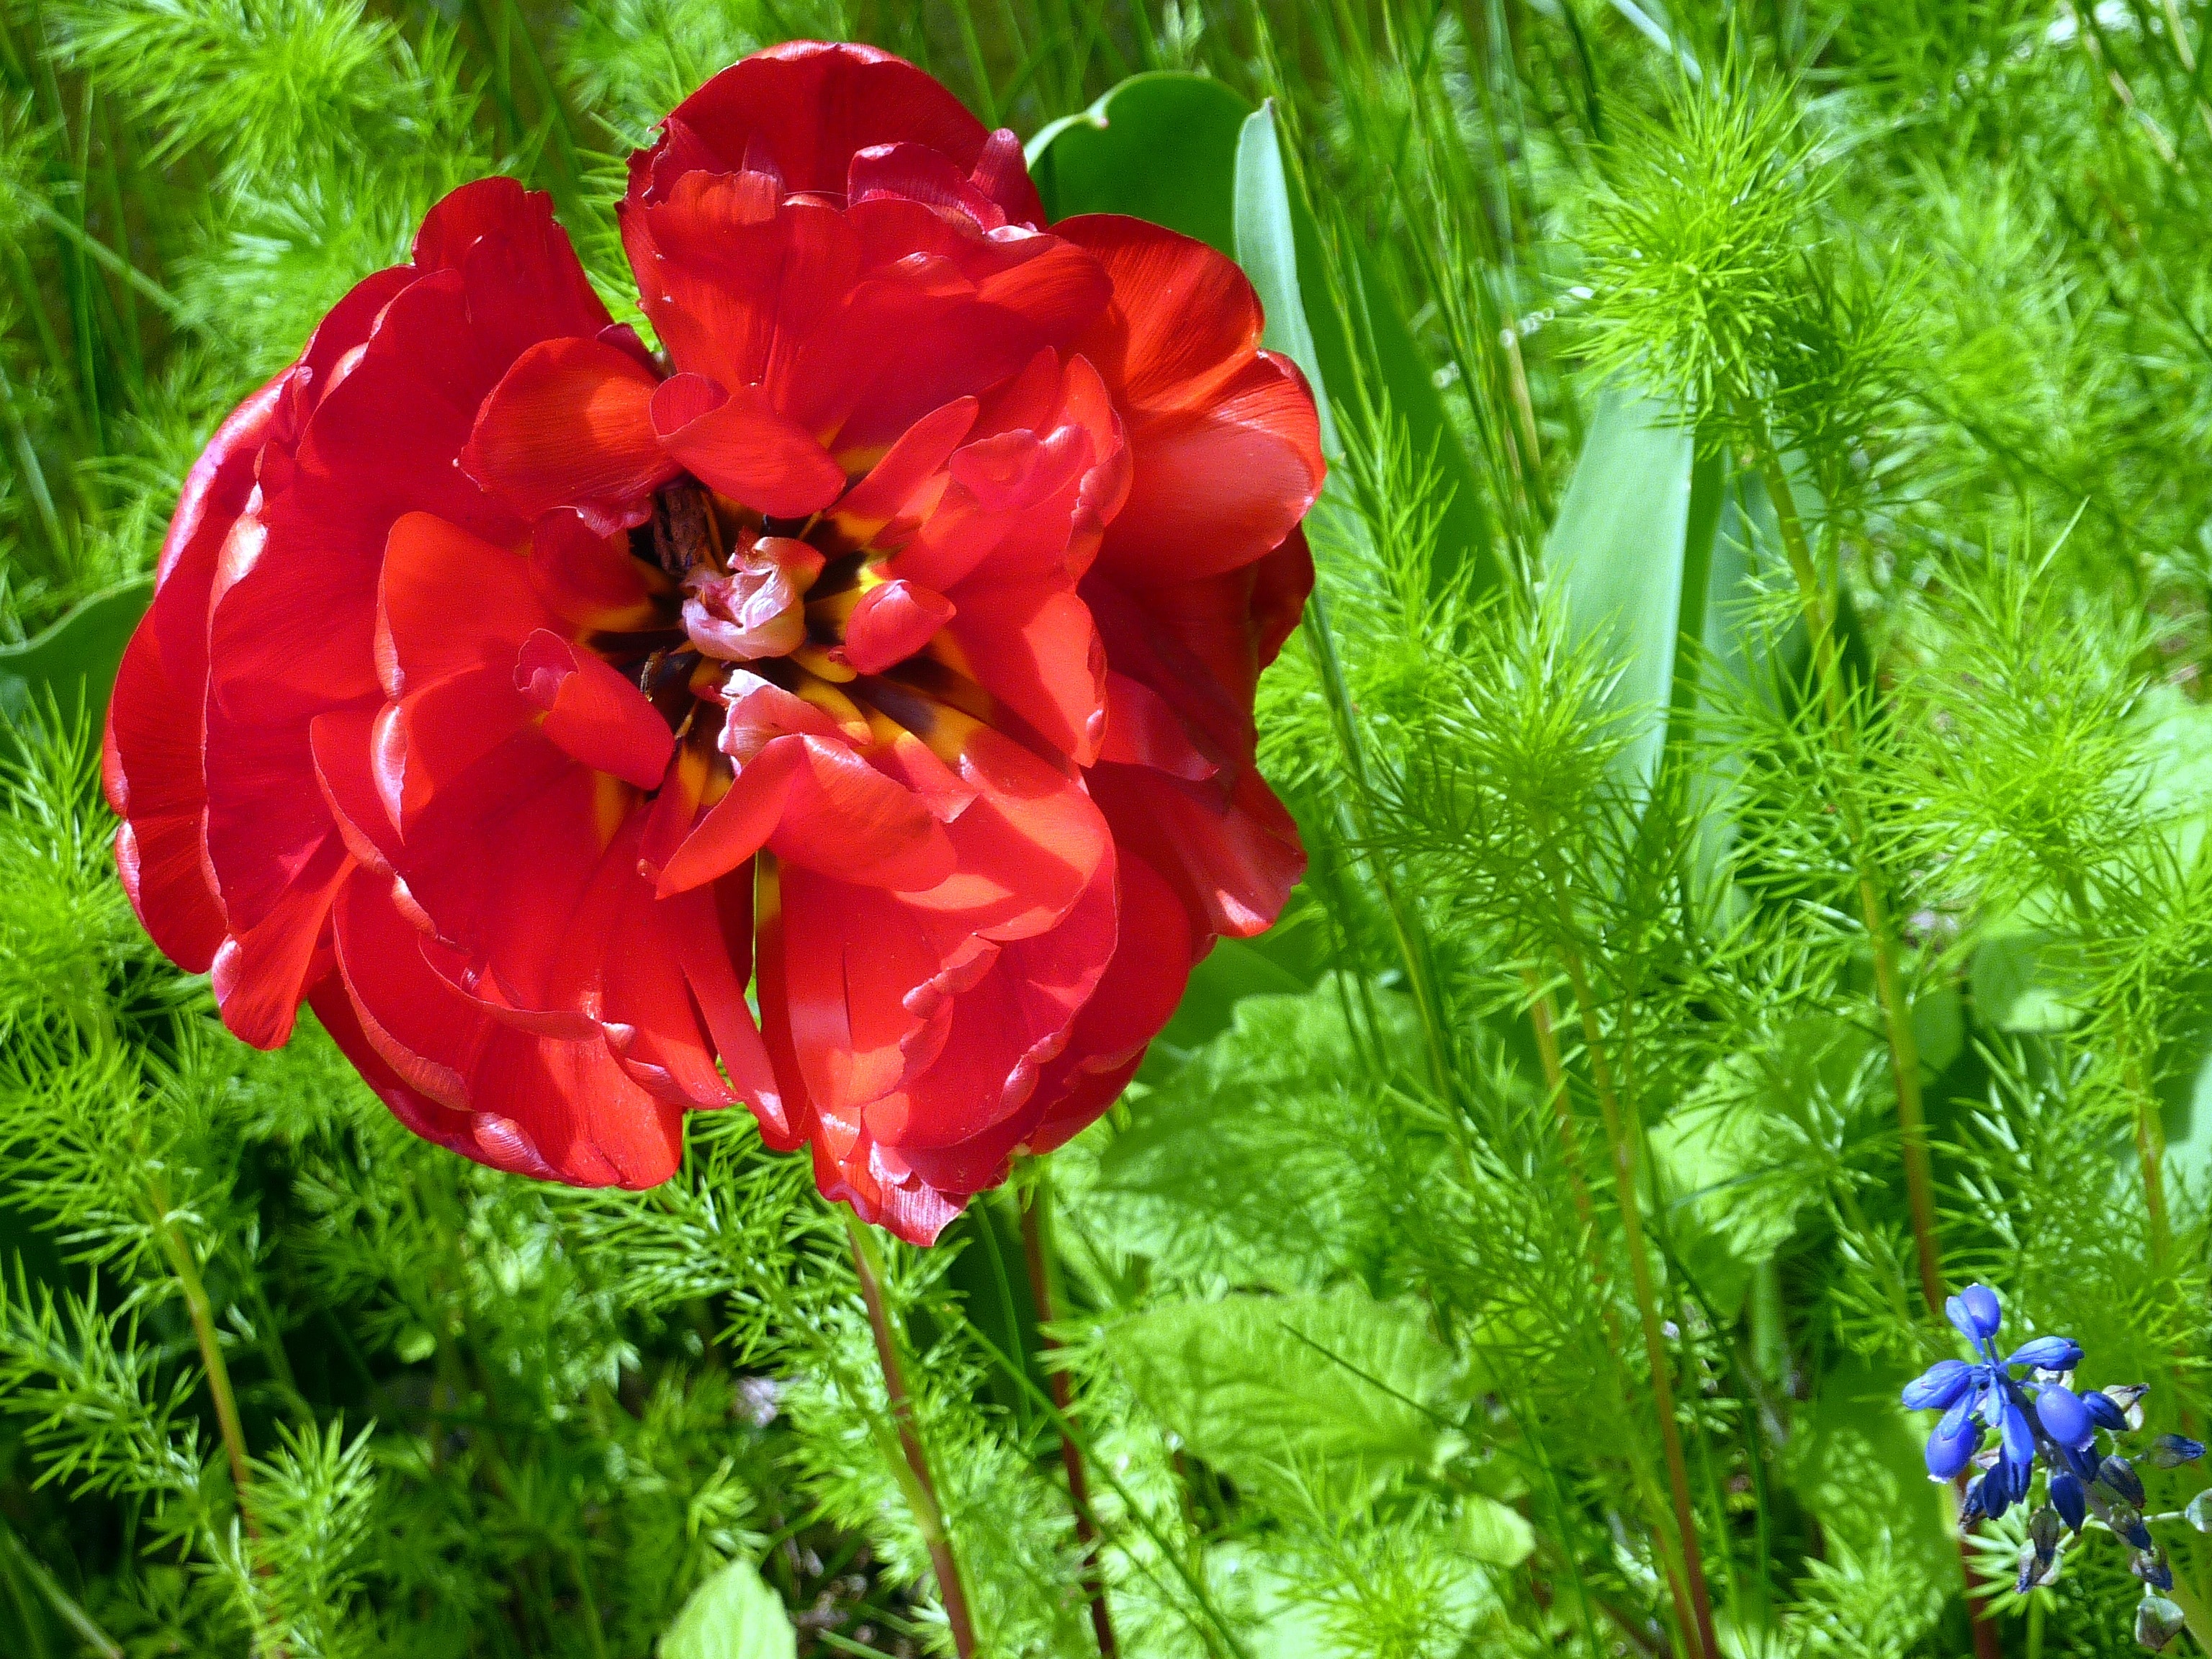 red flower near green plants